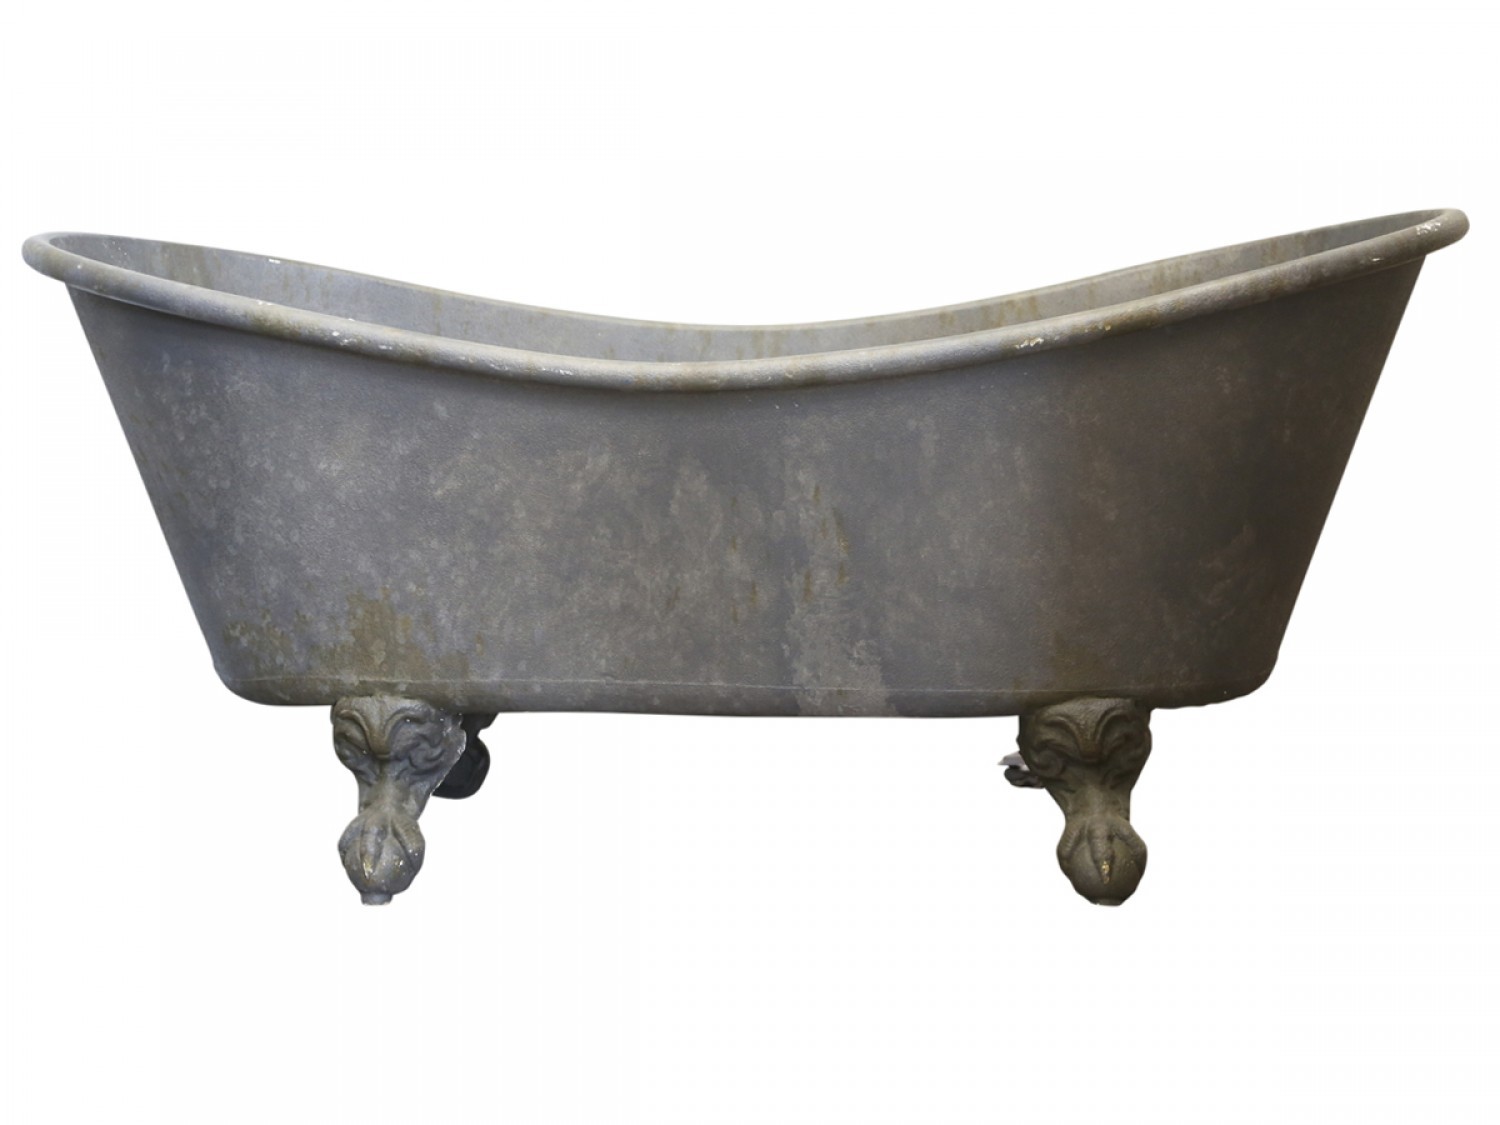 Kovová antik dekorační vana ve starém franc.stylu Bathtub -  129*56*59cm Chic Antique